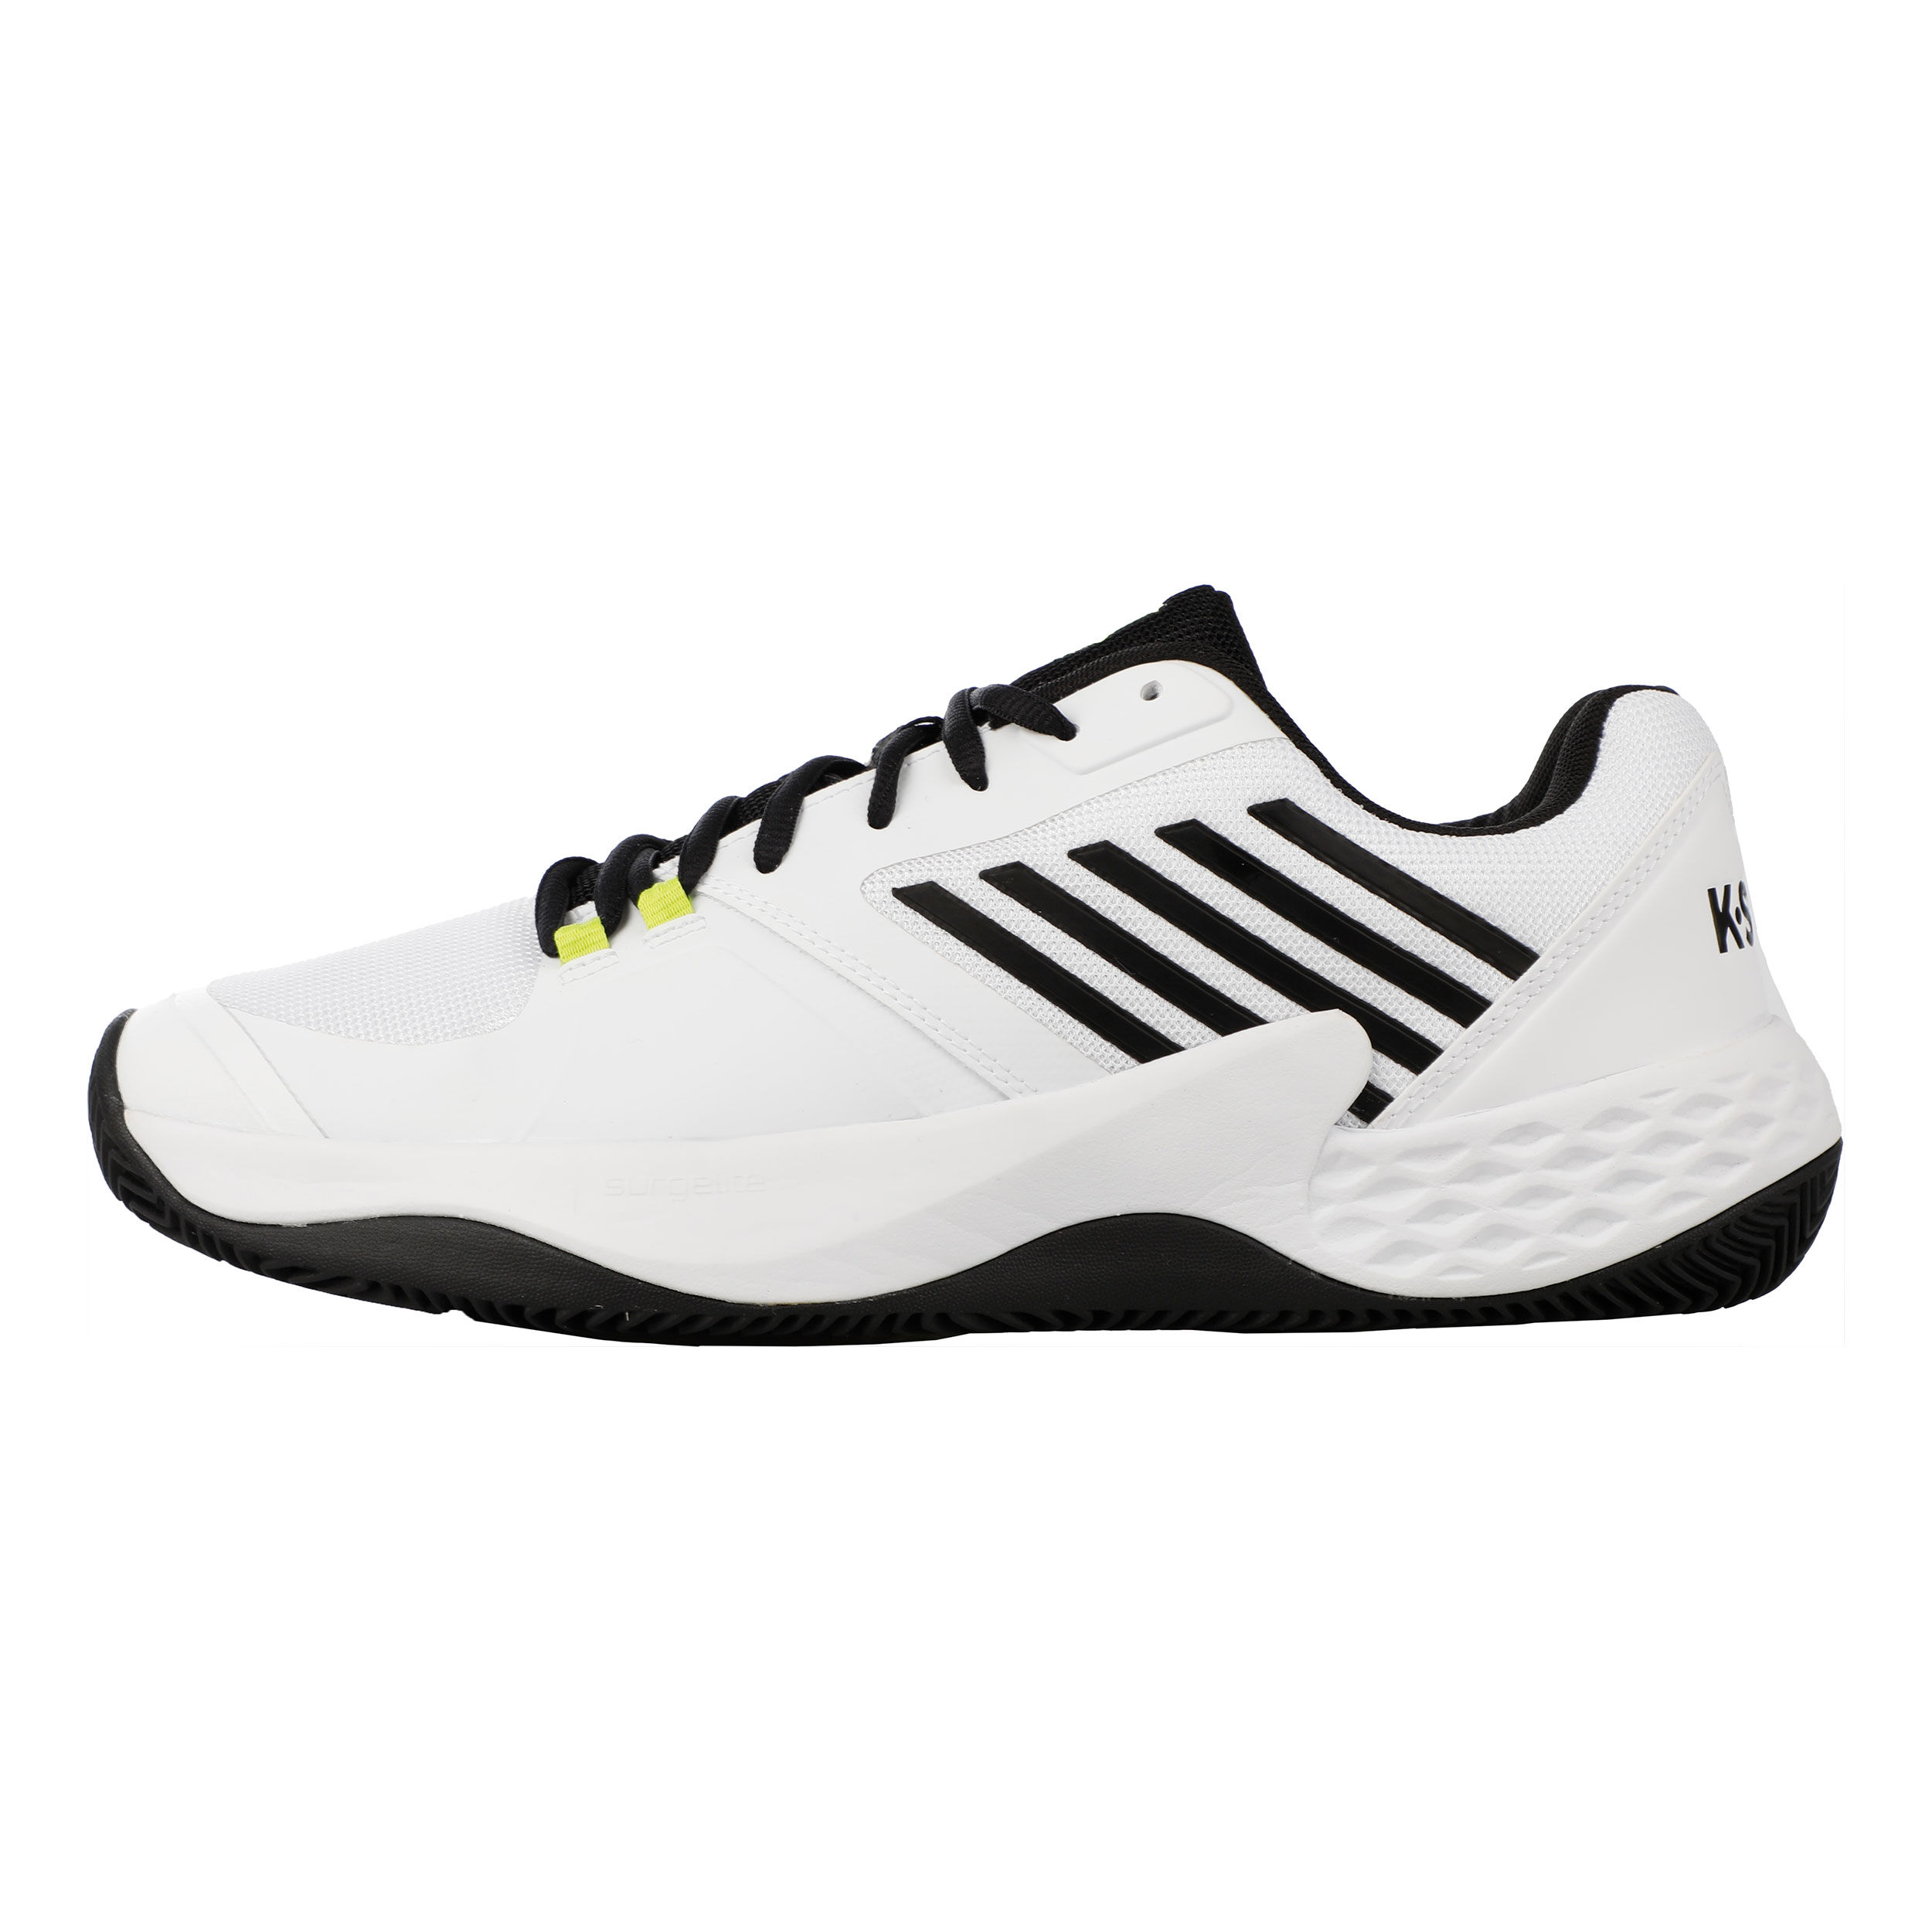 K-Swiss Mens Aero Court Tennis Shoe 